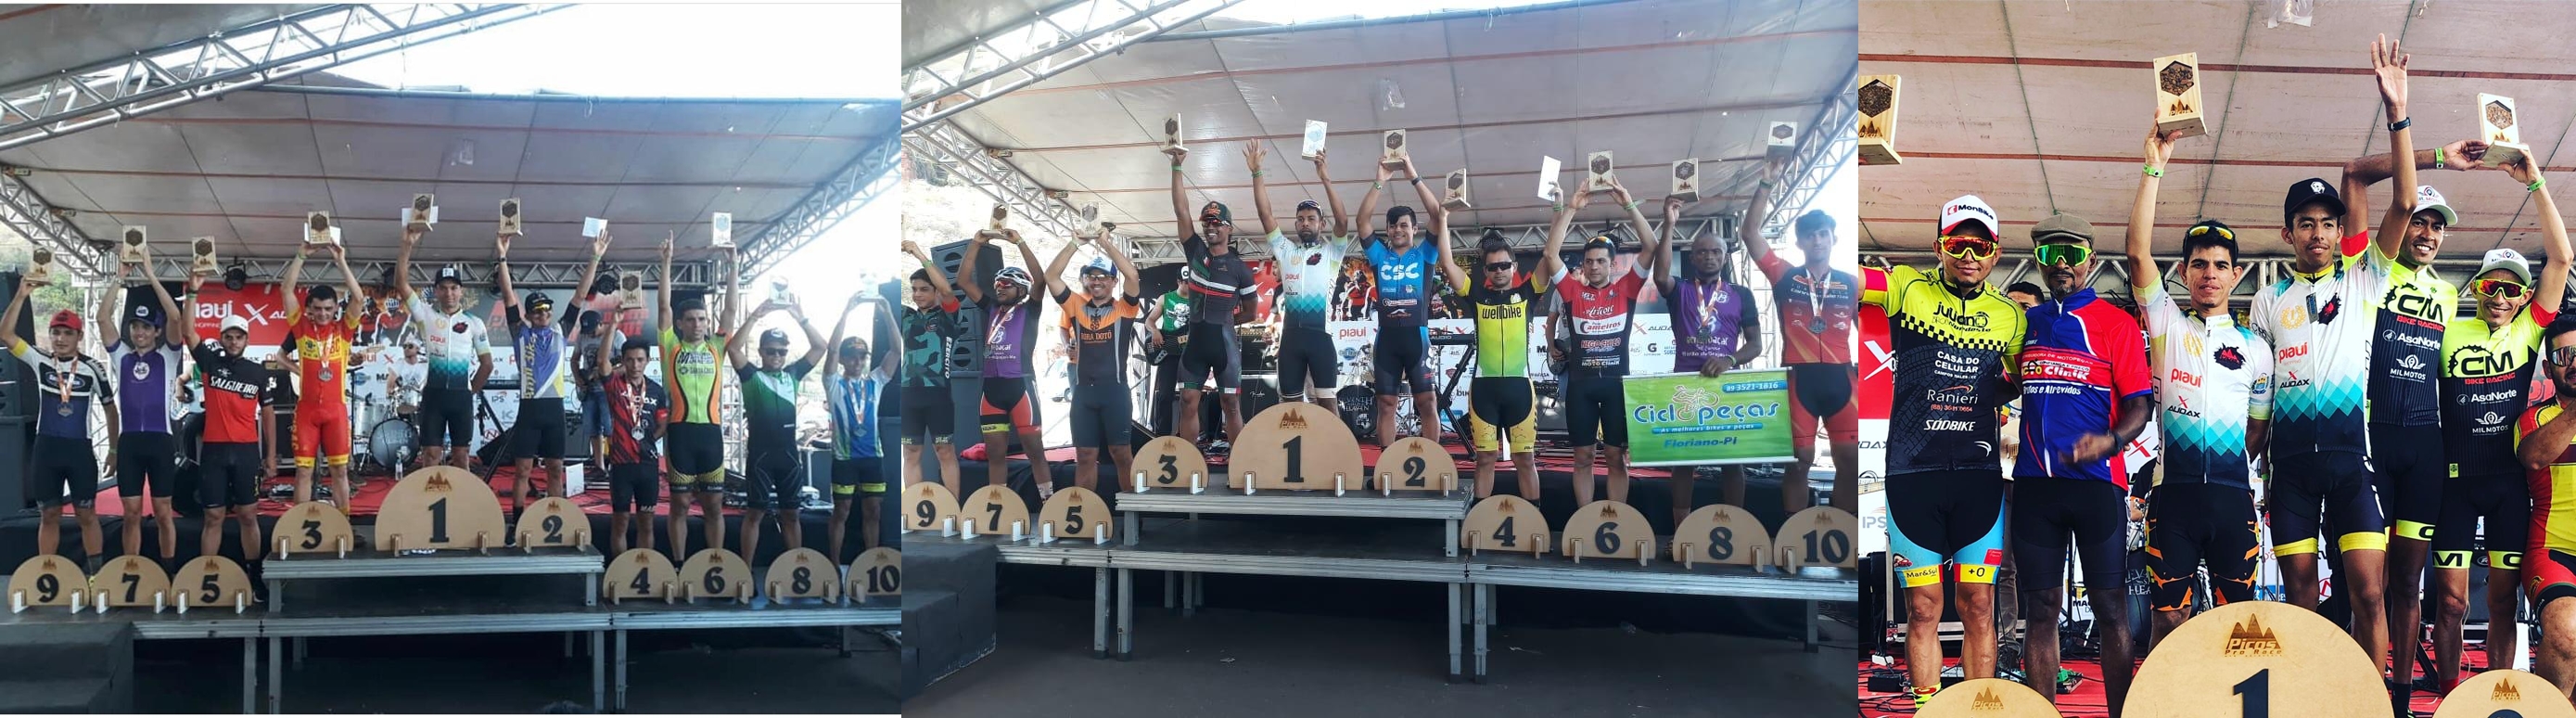 Ciclismo de Iguatu conquista pódio em evento no Piauí